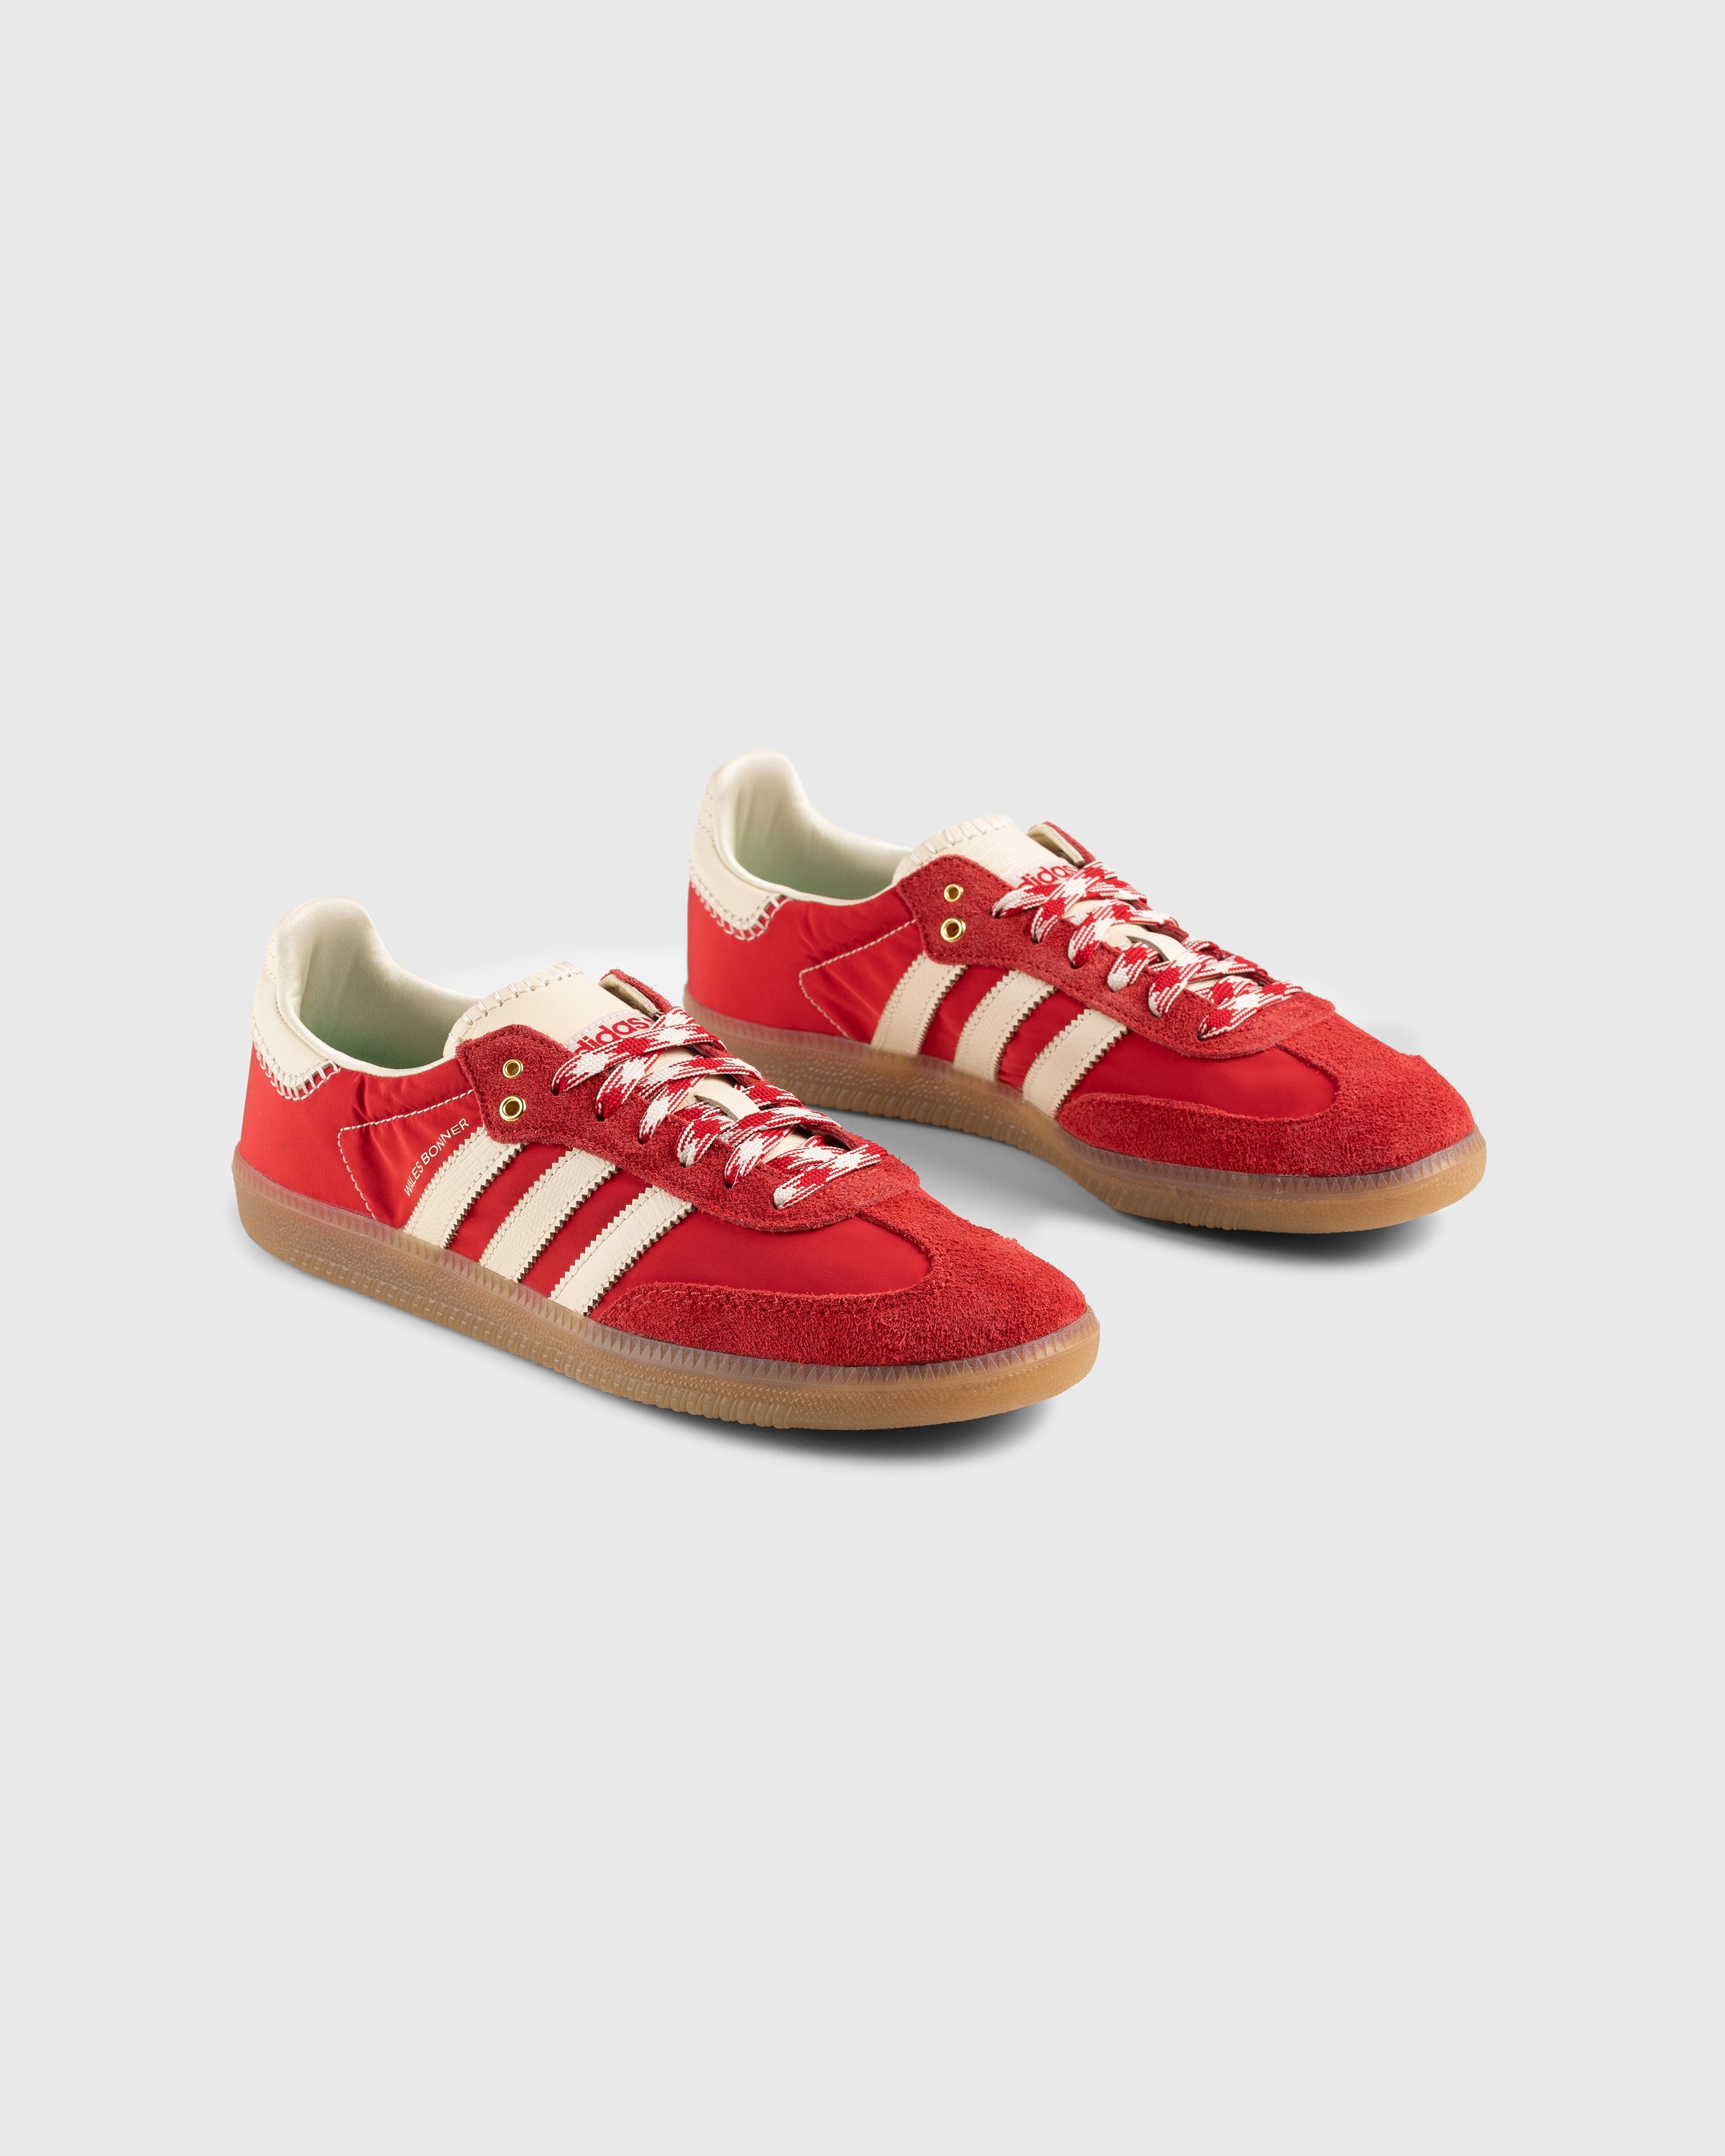 Adidas x Wales Bonner - WB Samba Scarlet/Ecru Tint/Scarlet - Footwear - Red - Image 4